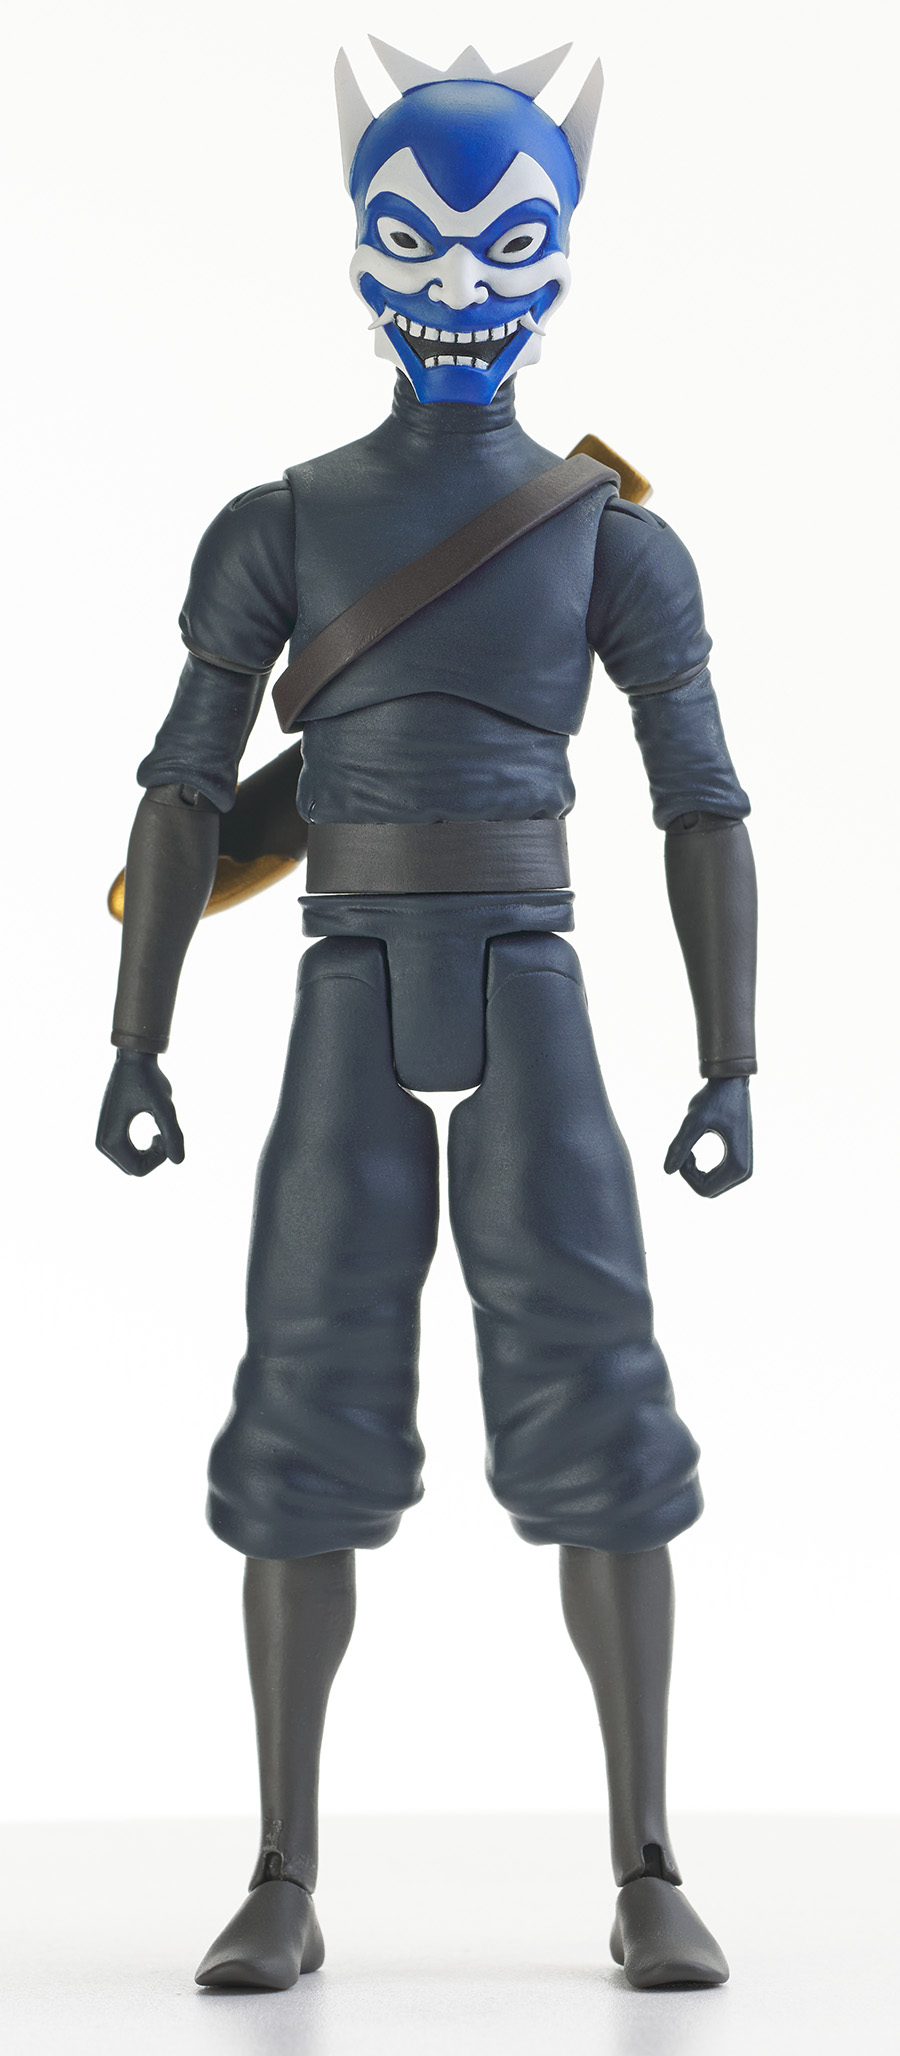 Avatar The Last Airbender Action Figure Series 5 - Blue Spirit Zuko